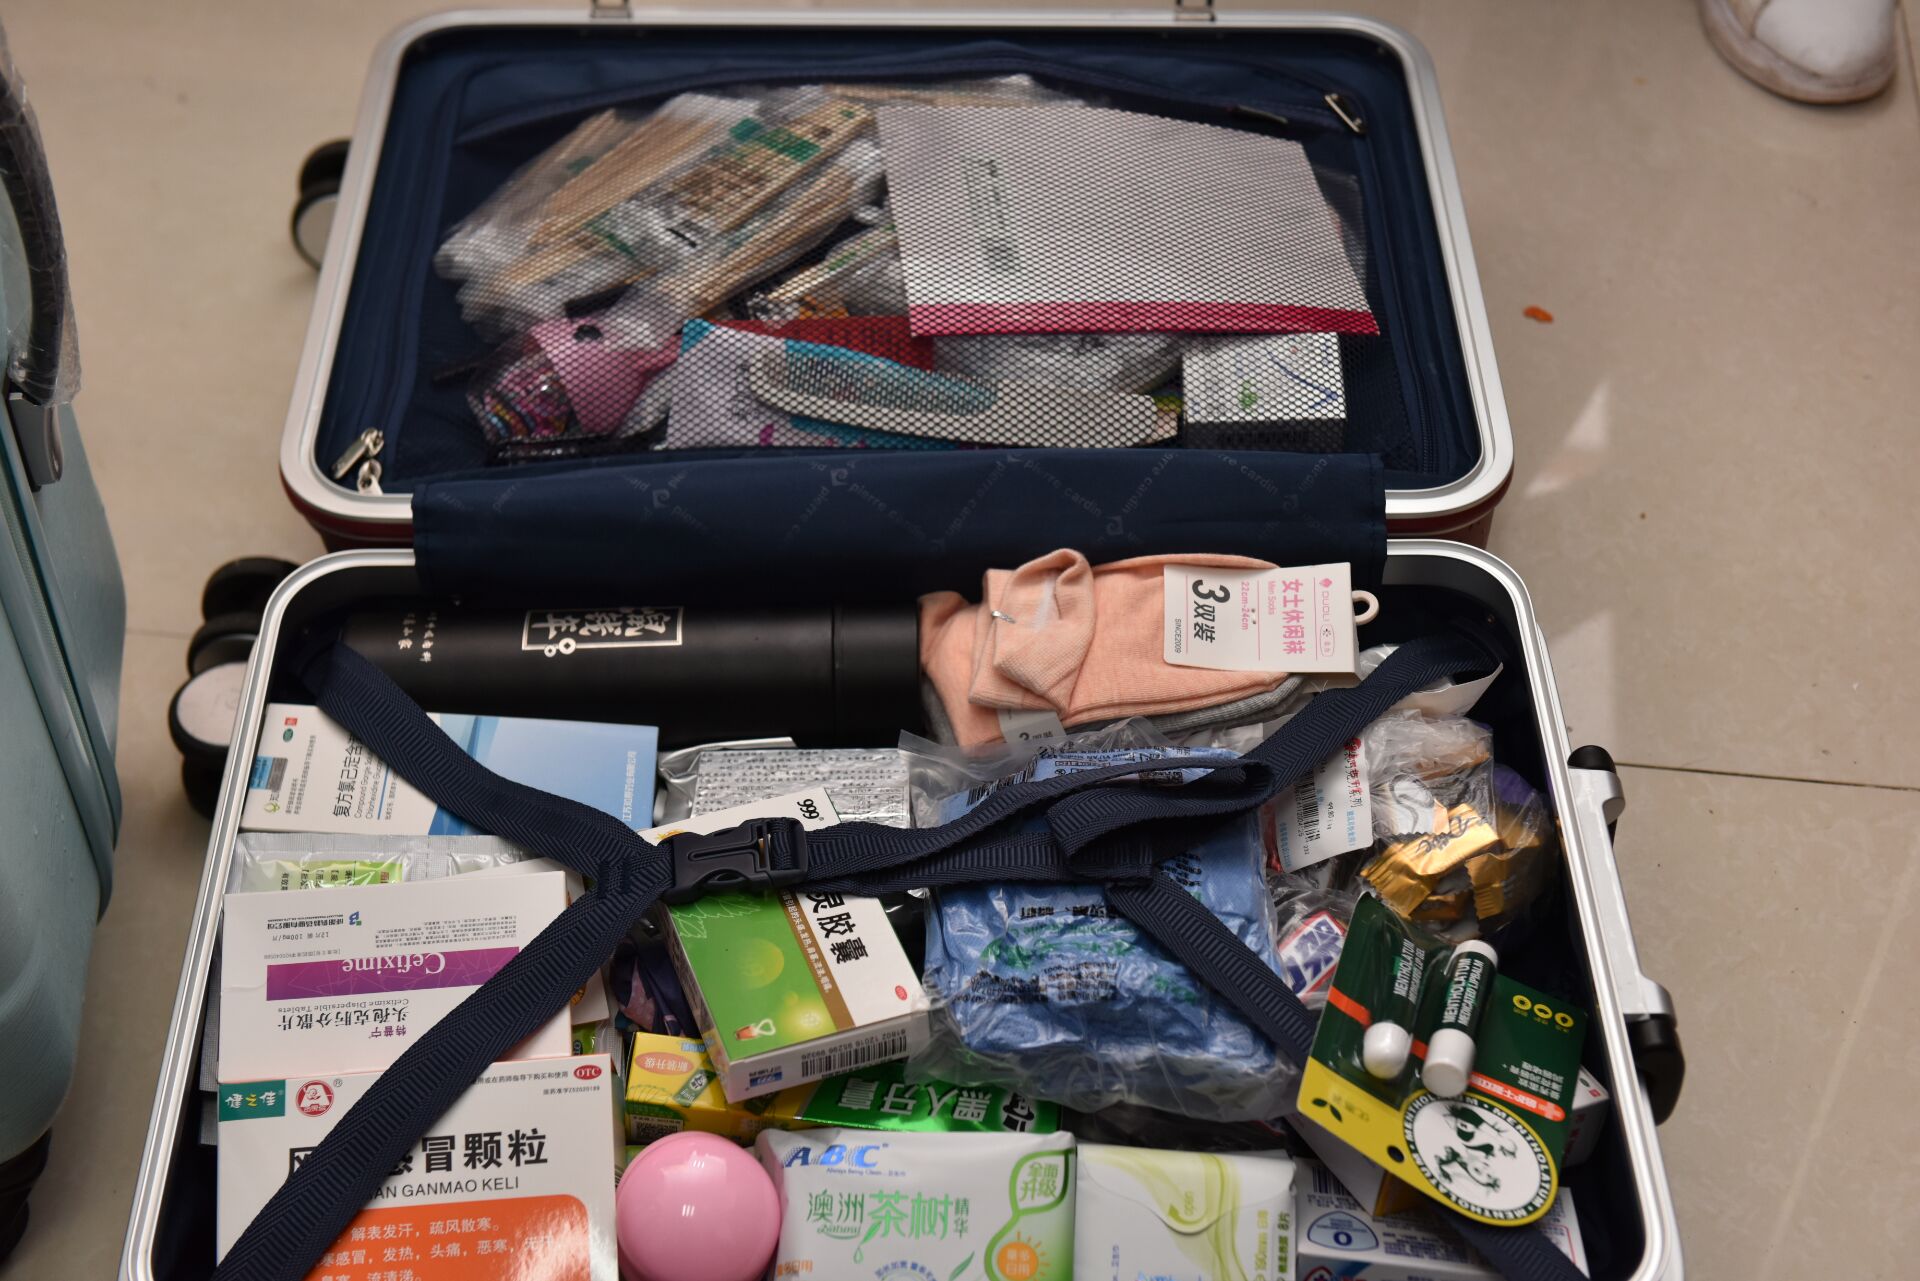 打包行李药品 带上家人牵挂 重庆大学附属肿瘤医院14人的援鄂医疗队整